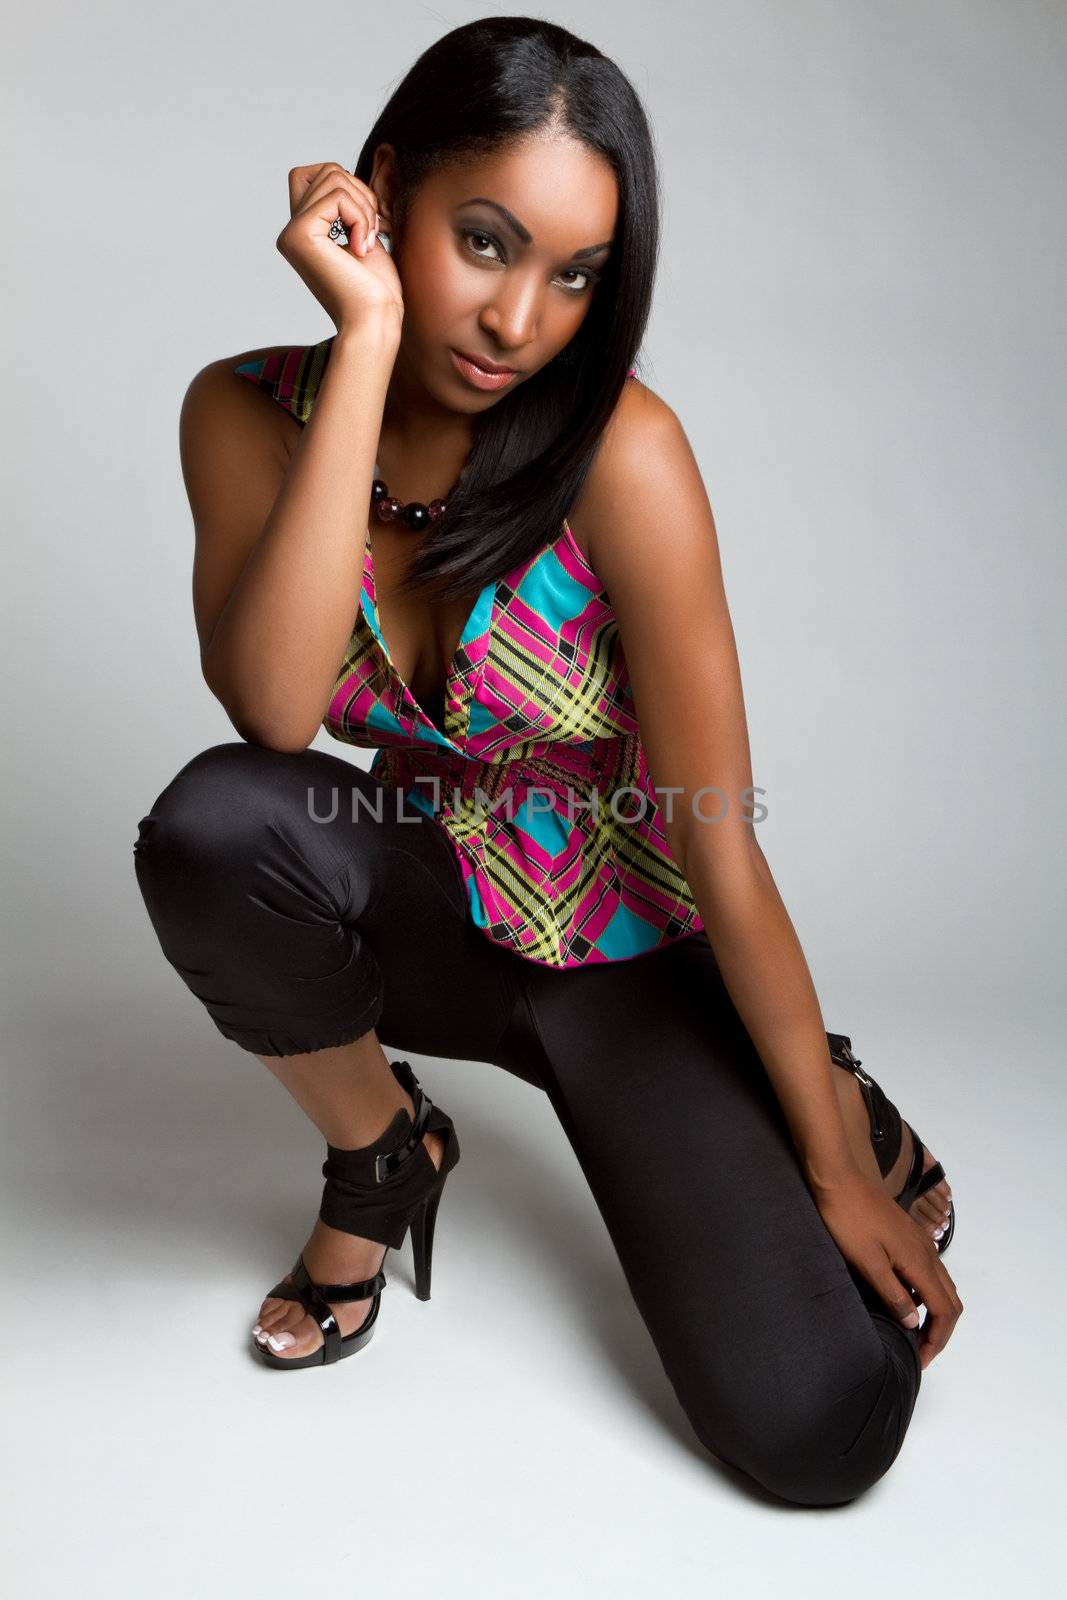 Black Fashion Model Woman by keeweeboy